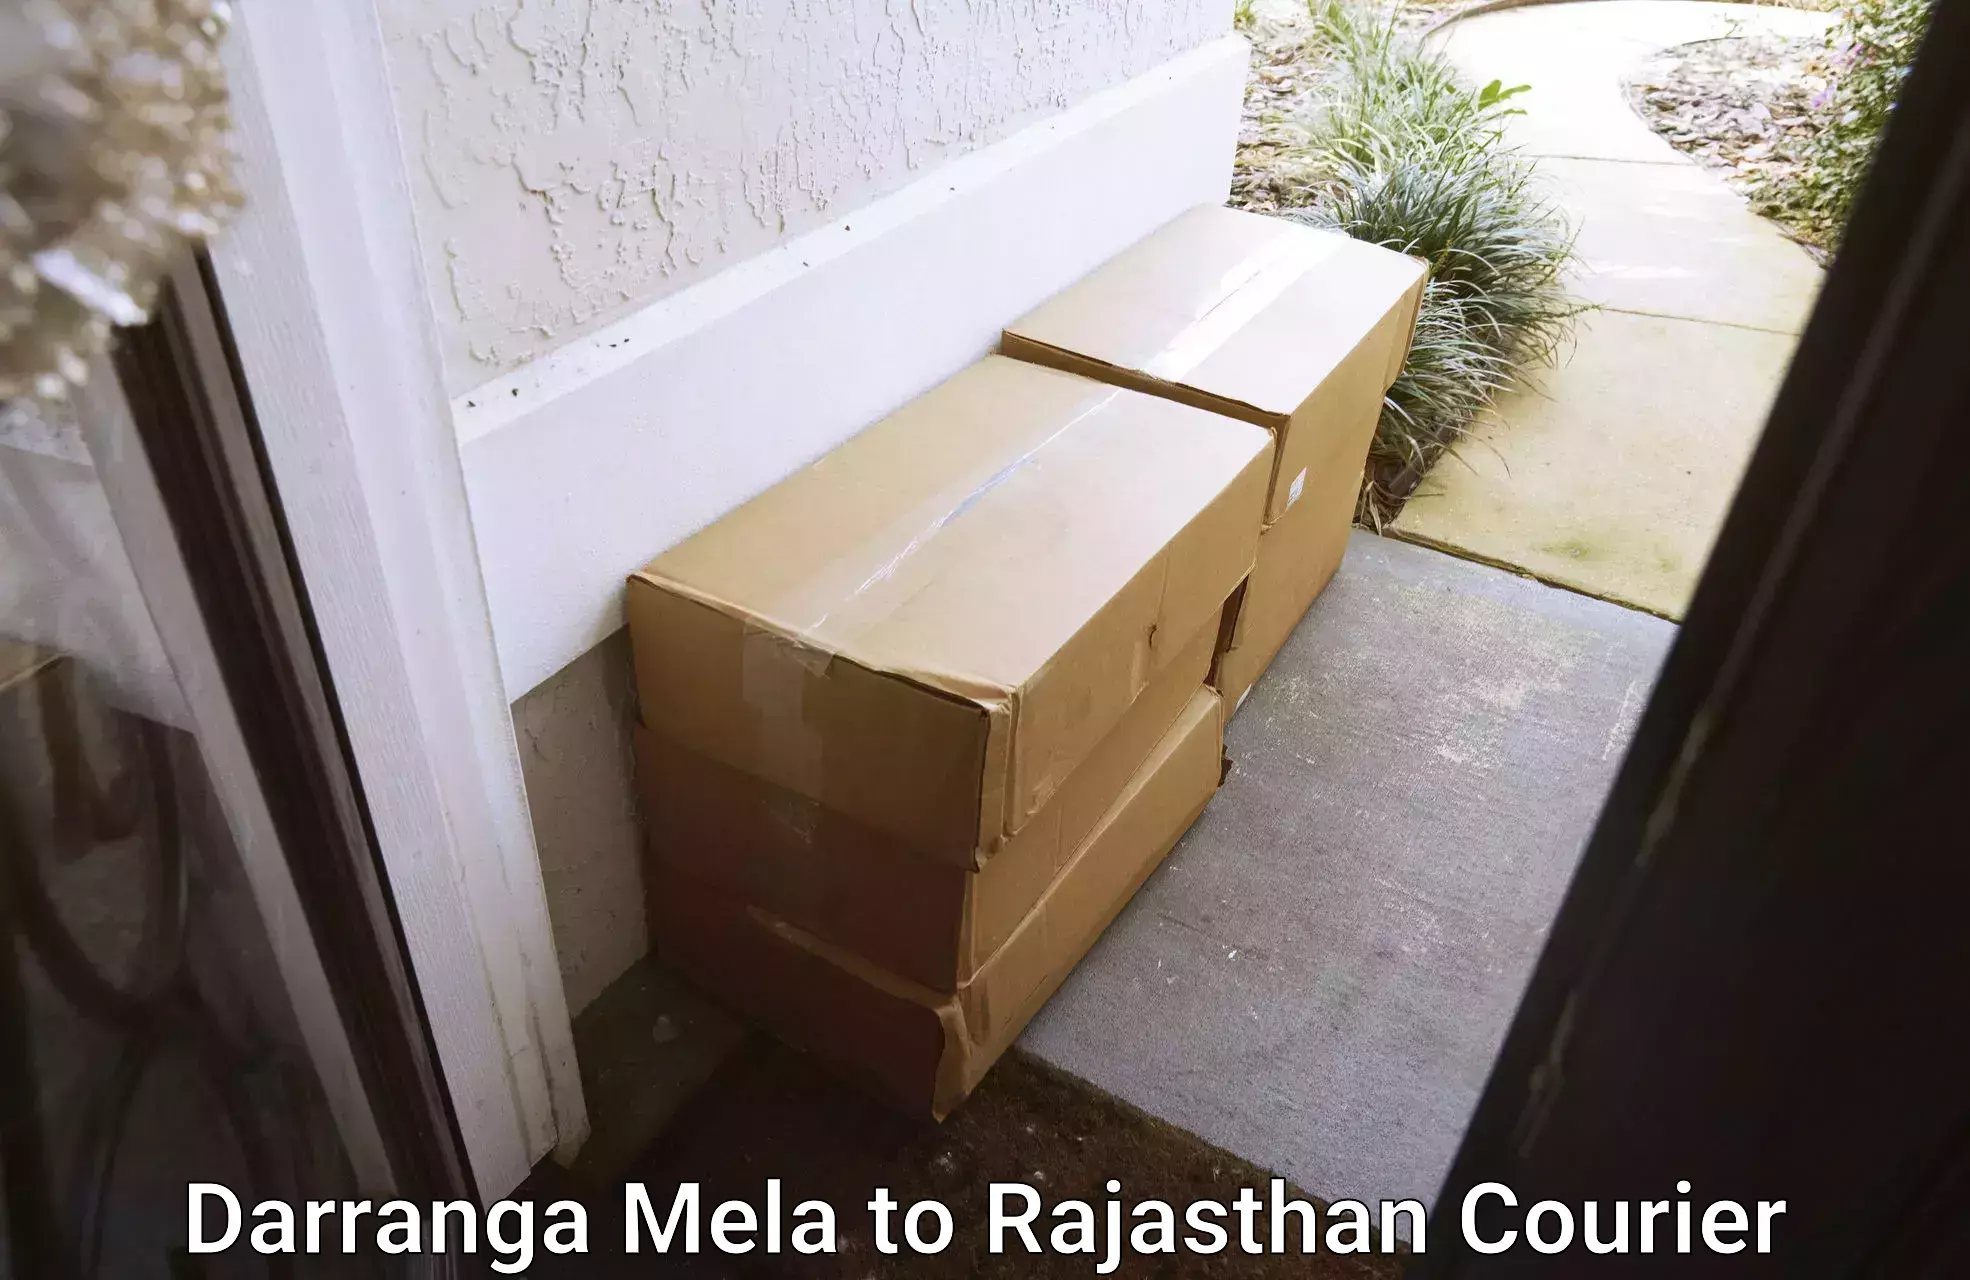 Courier service comparison Darranga Mela to Chhabra